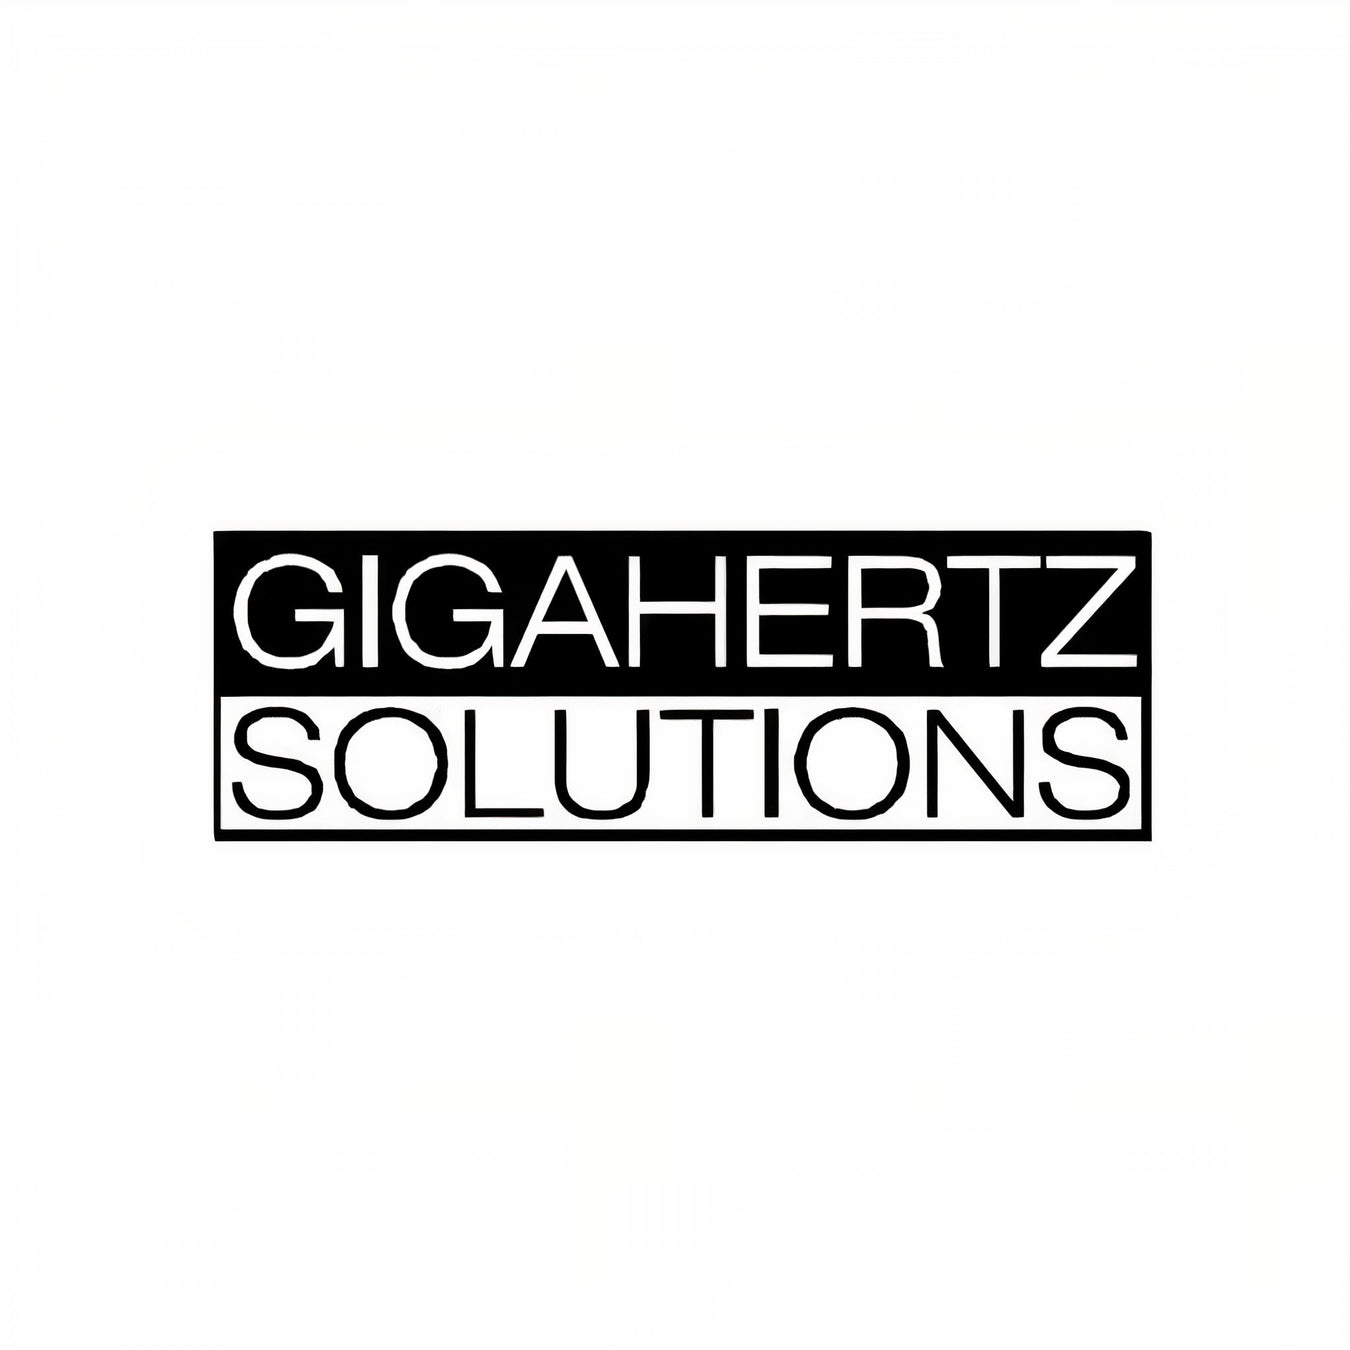 Gigahertz Solutions brand logo